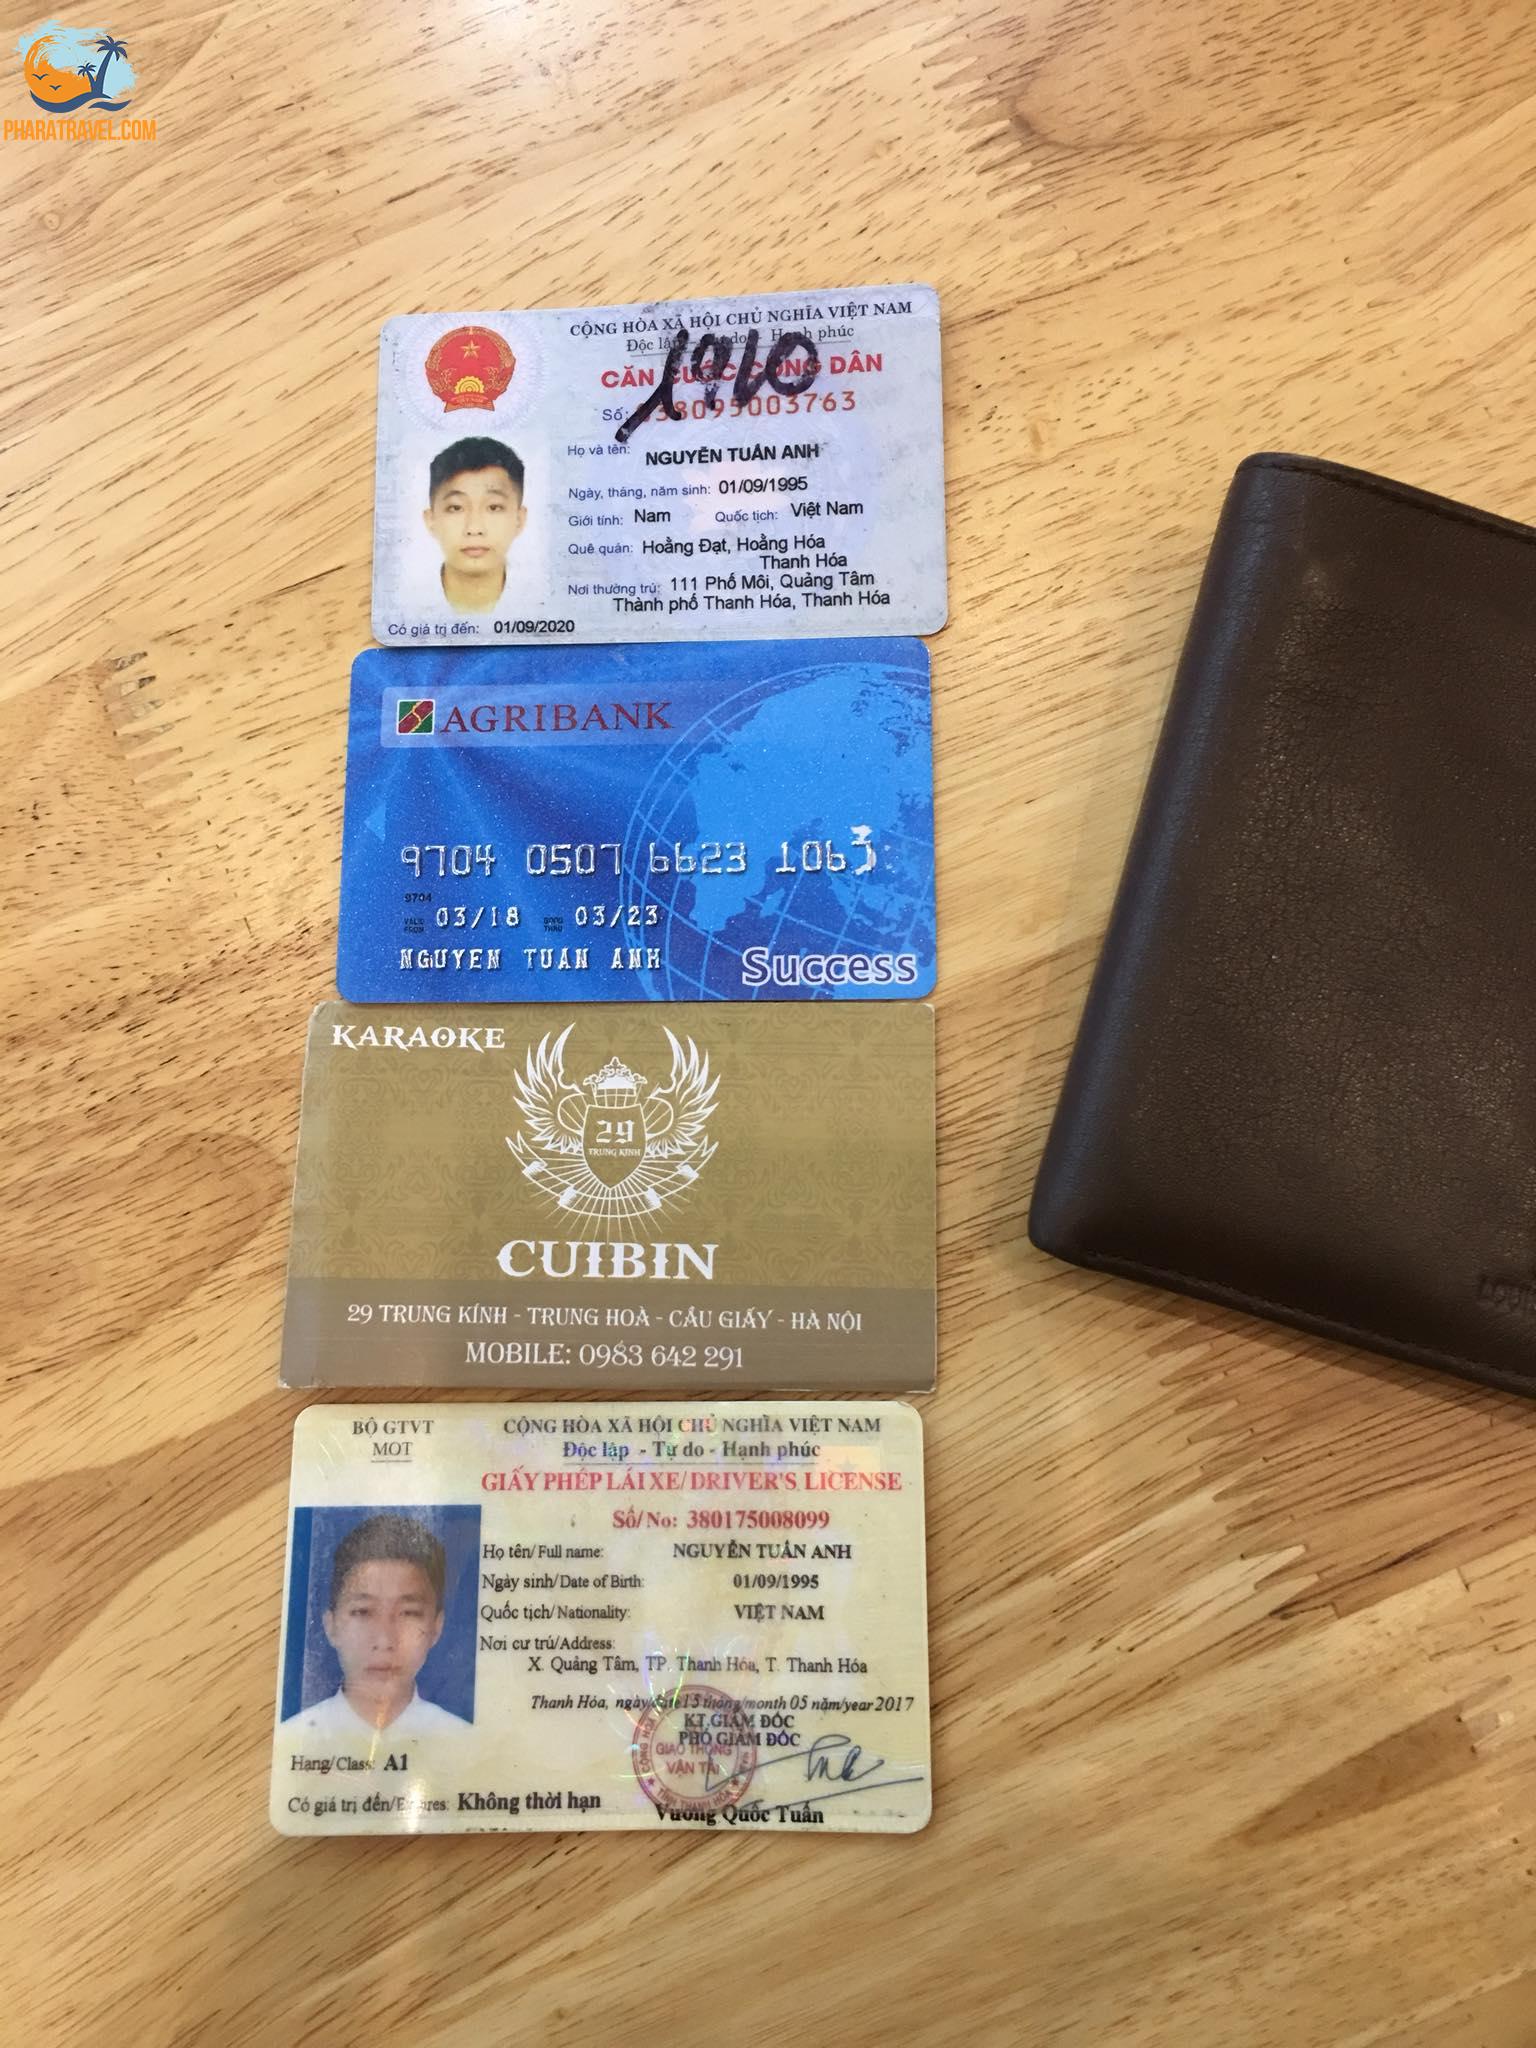 Du lịch Nha Trang: Kinh nghiệm từ A đến Z check-in các điểm vạn người mê